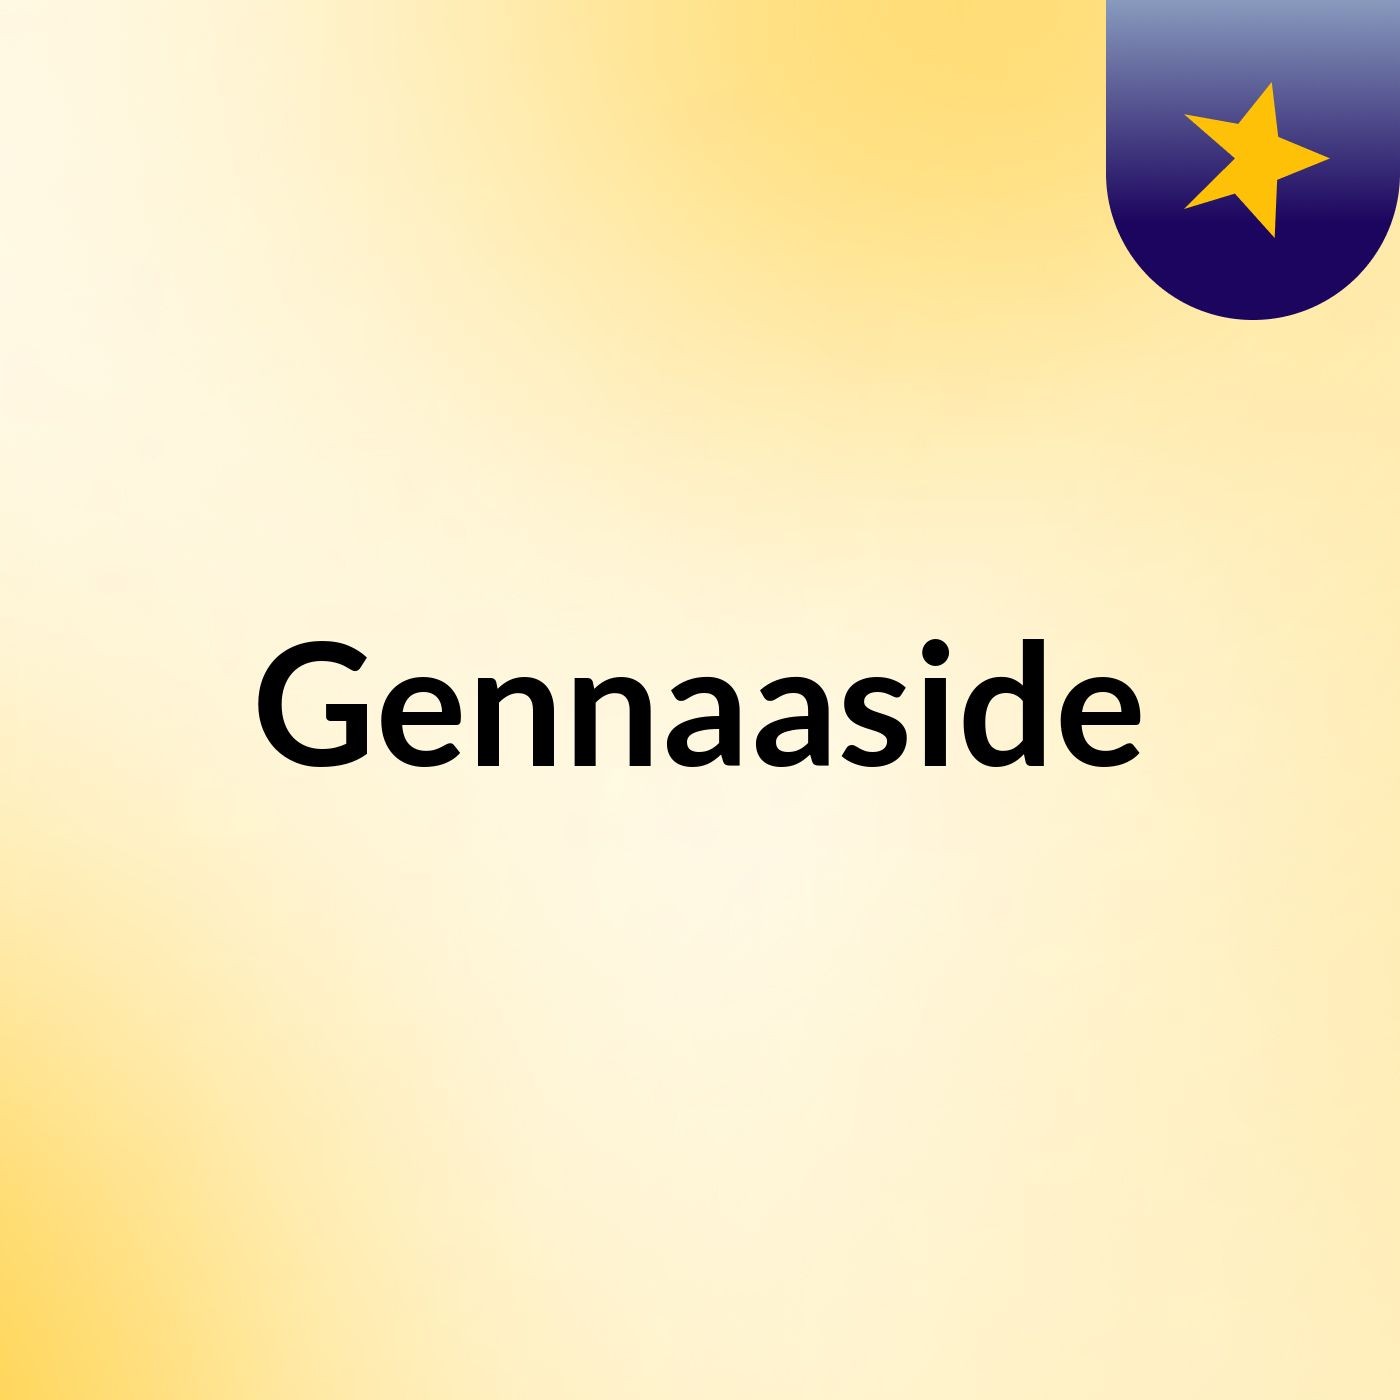 Episode 3 - Gennaaside